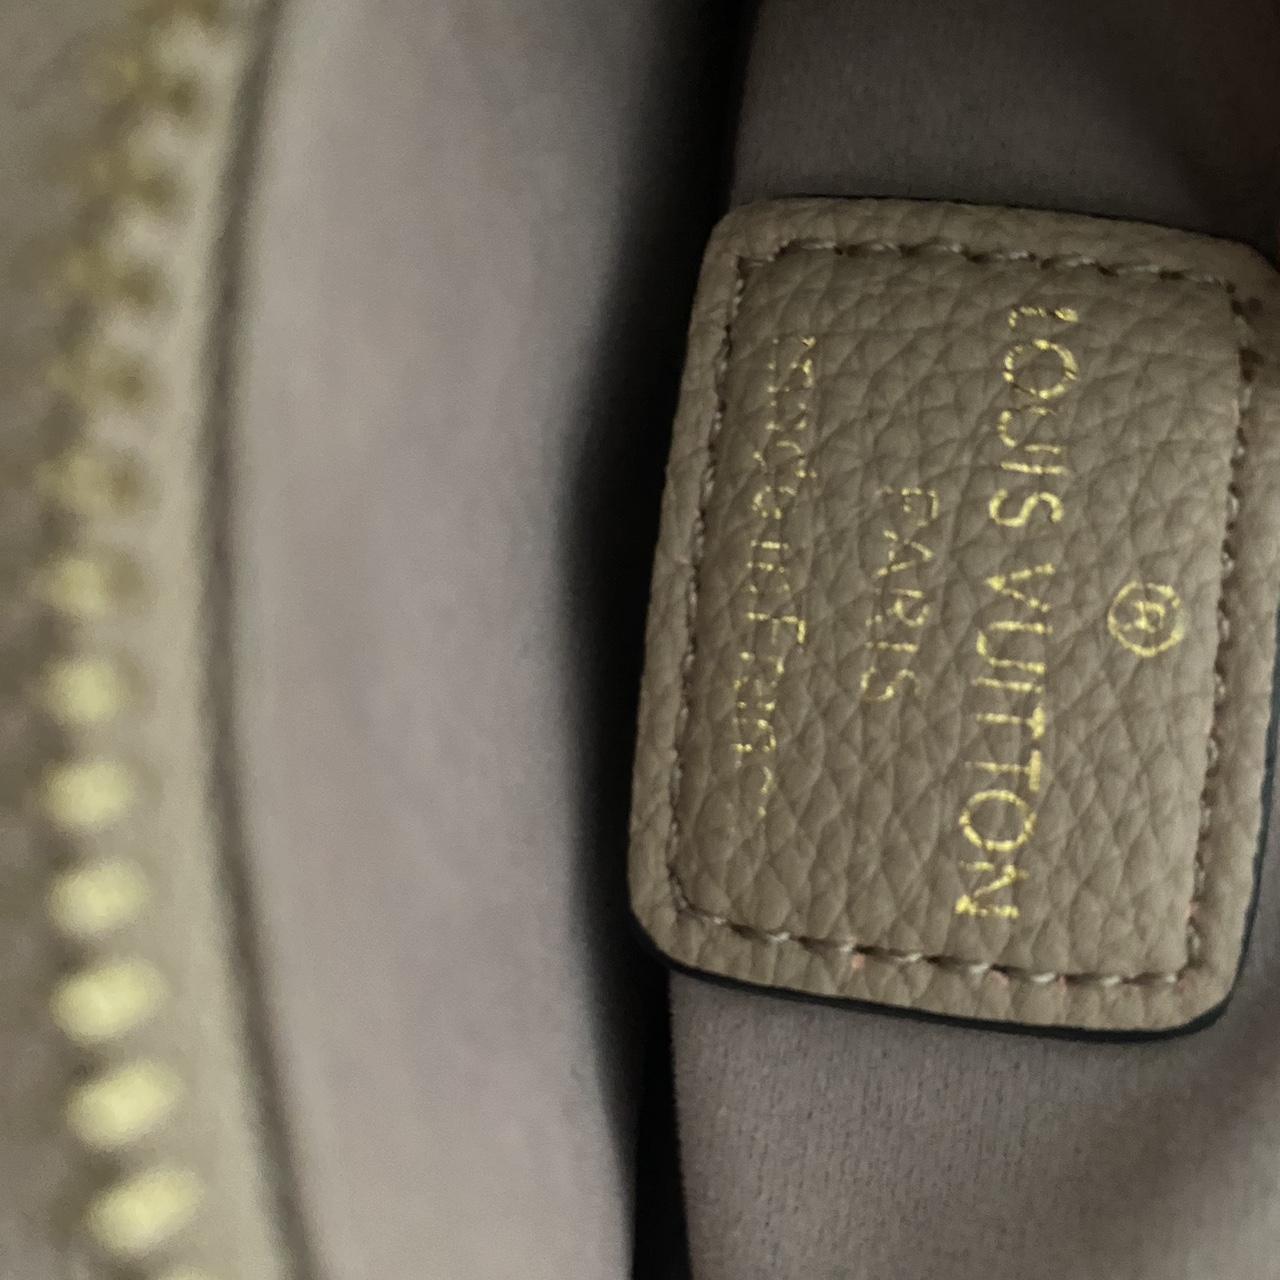 Louis Vuitton maida hobo bag Got as a gift but never - Depop